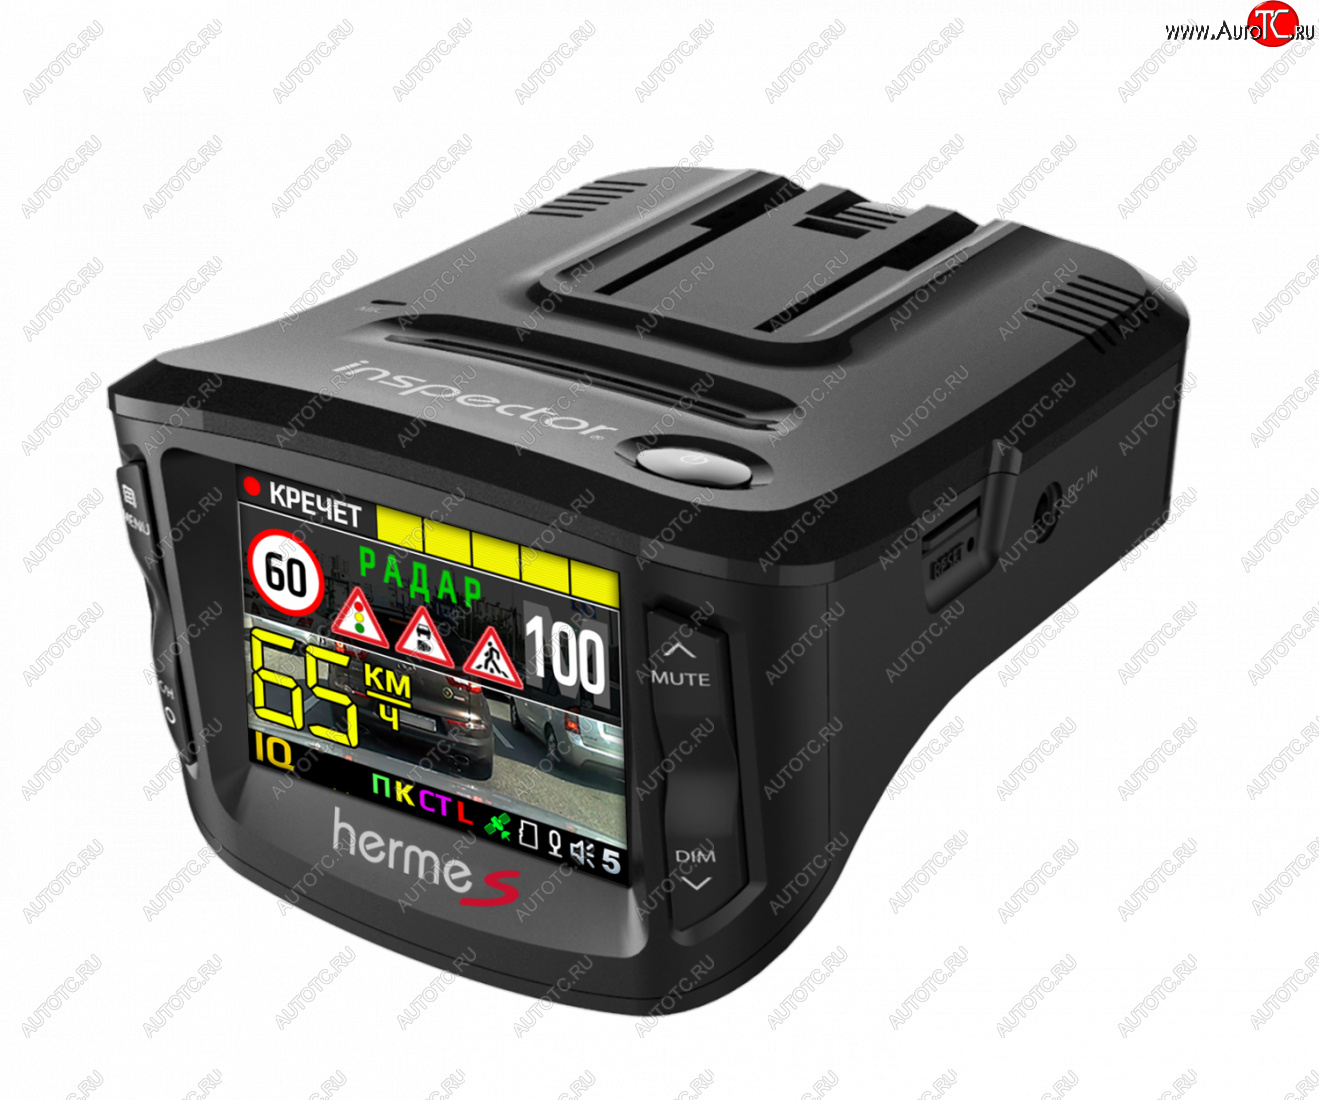 15 299 р. Видеорегистратор с радардетектором GPS INSPECTOR HERMES (SIGNATURE) Nissan Terrano D10 дорестайлинг (2013-2016)